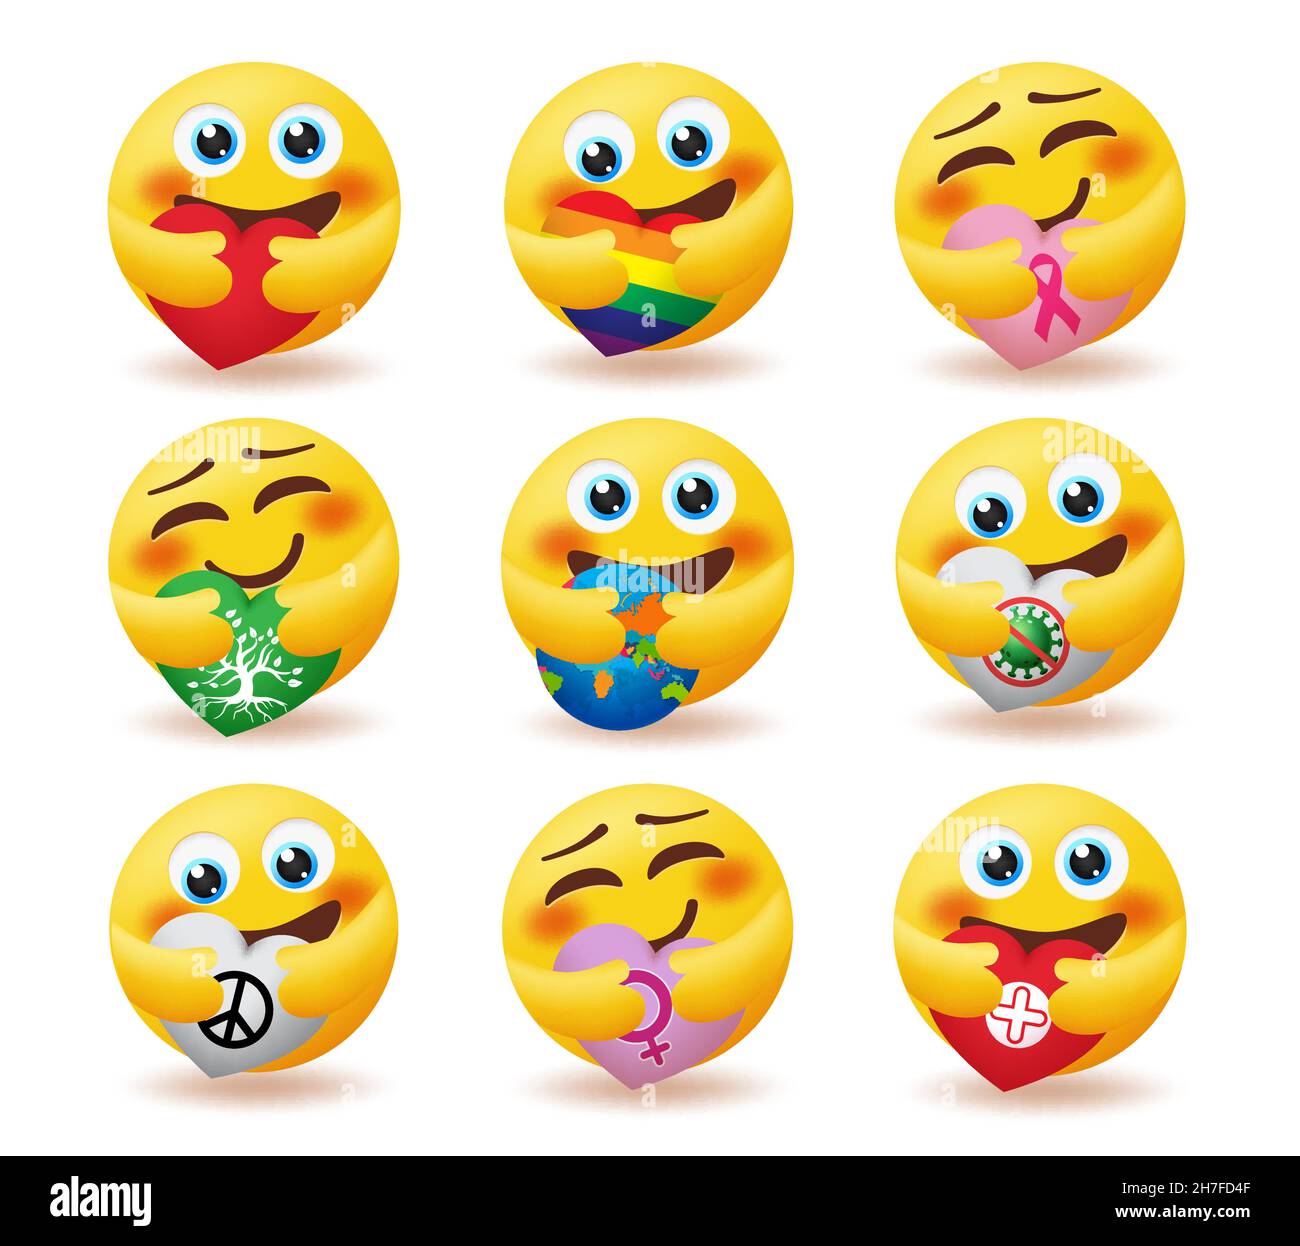 Soins emoji Banque d'images détourées - Alamy